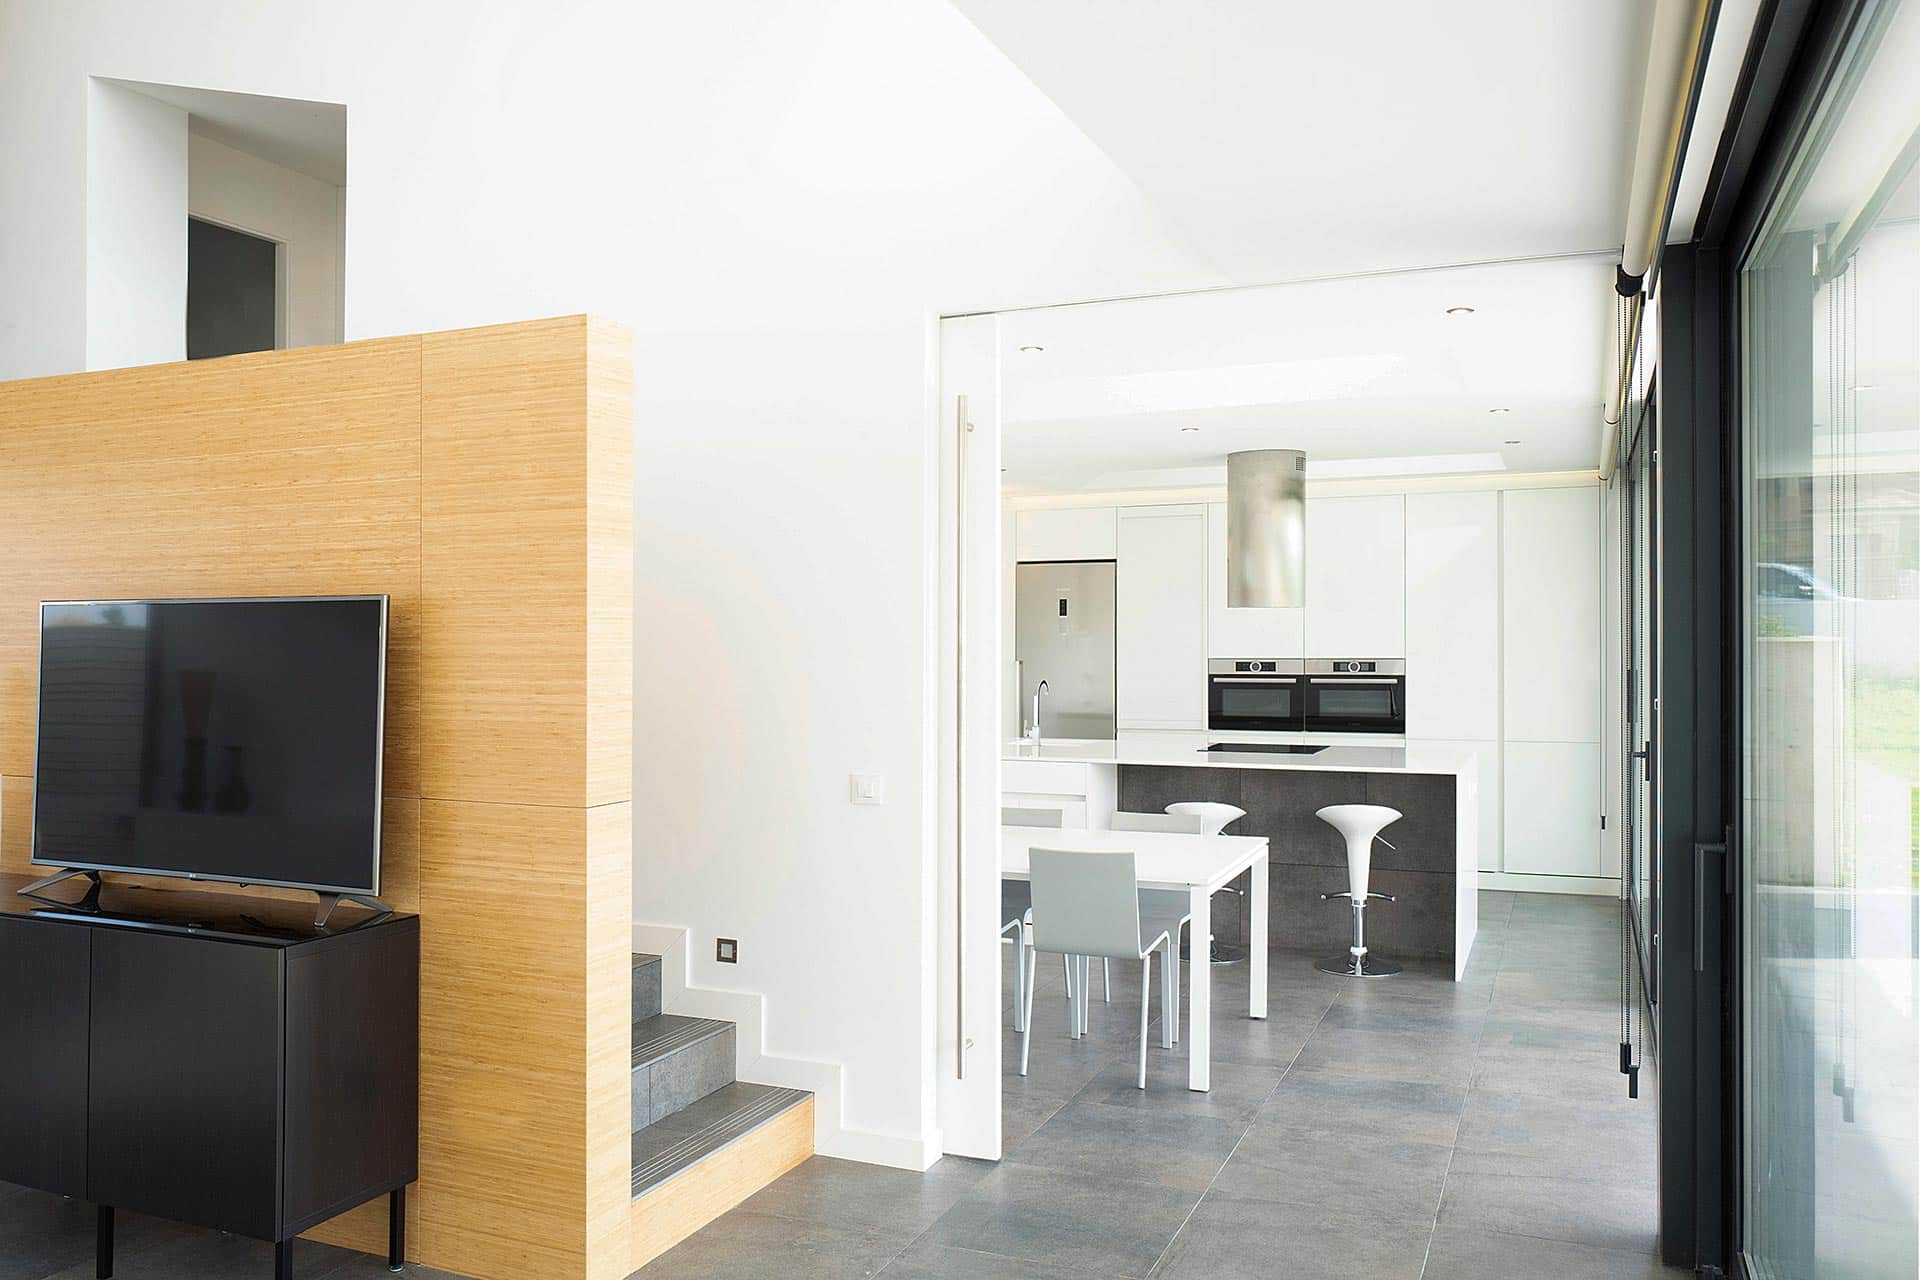 Cocina blanca conectada a salón en casa moderna diseñada por Moah Arquitectos en Villaverde, Cantabria